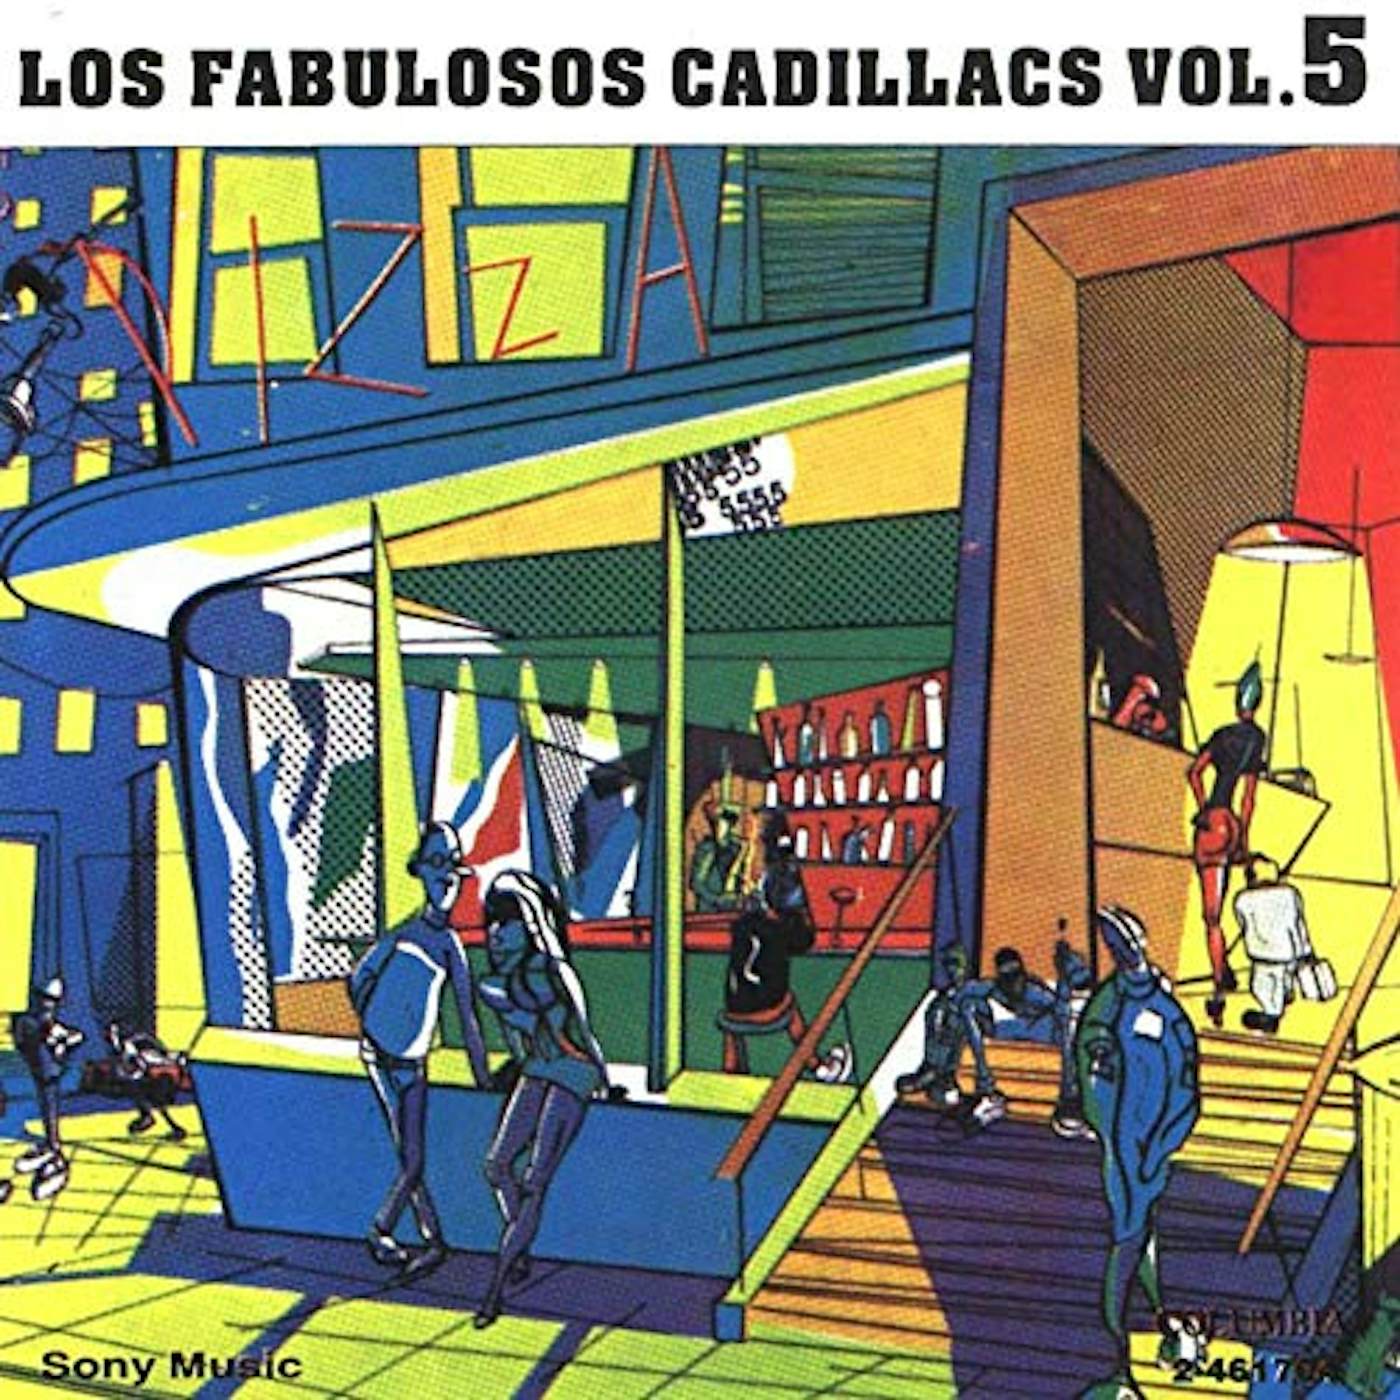 FABULOSOS CADILLACS VOLUMEN 5 Vinyl Record